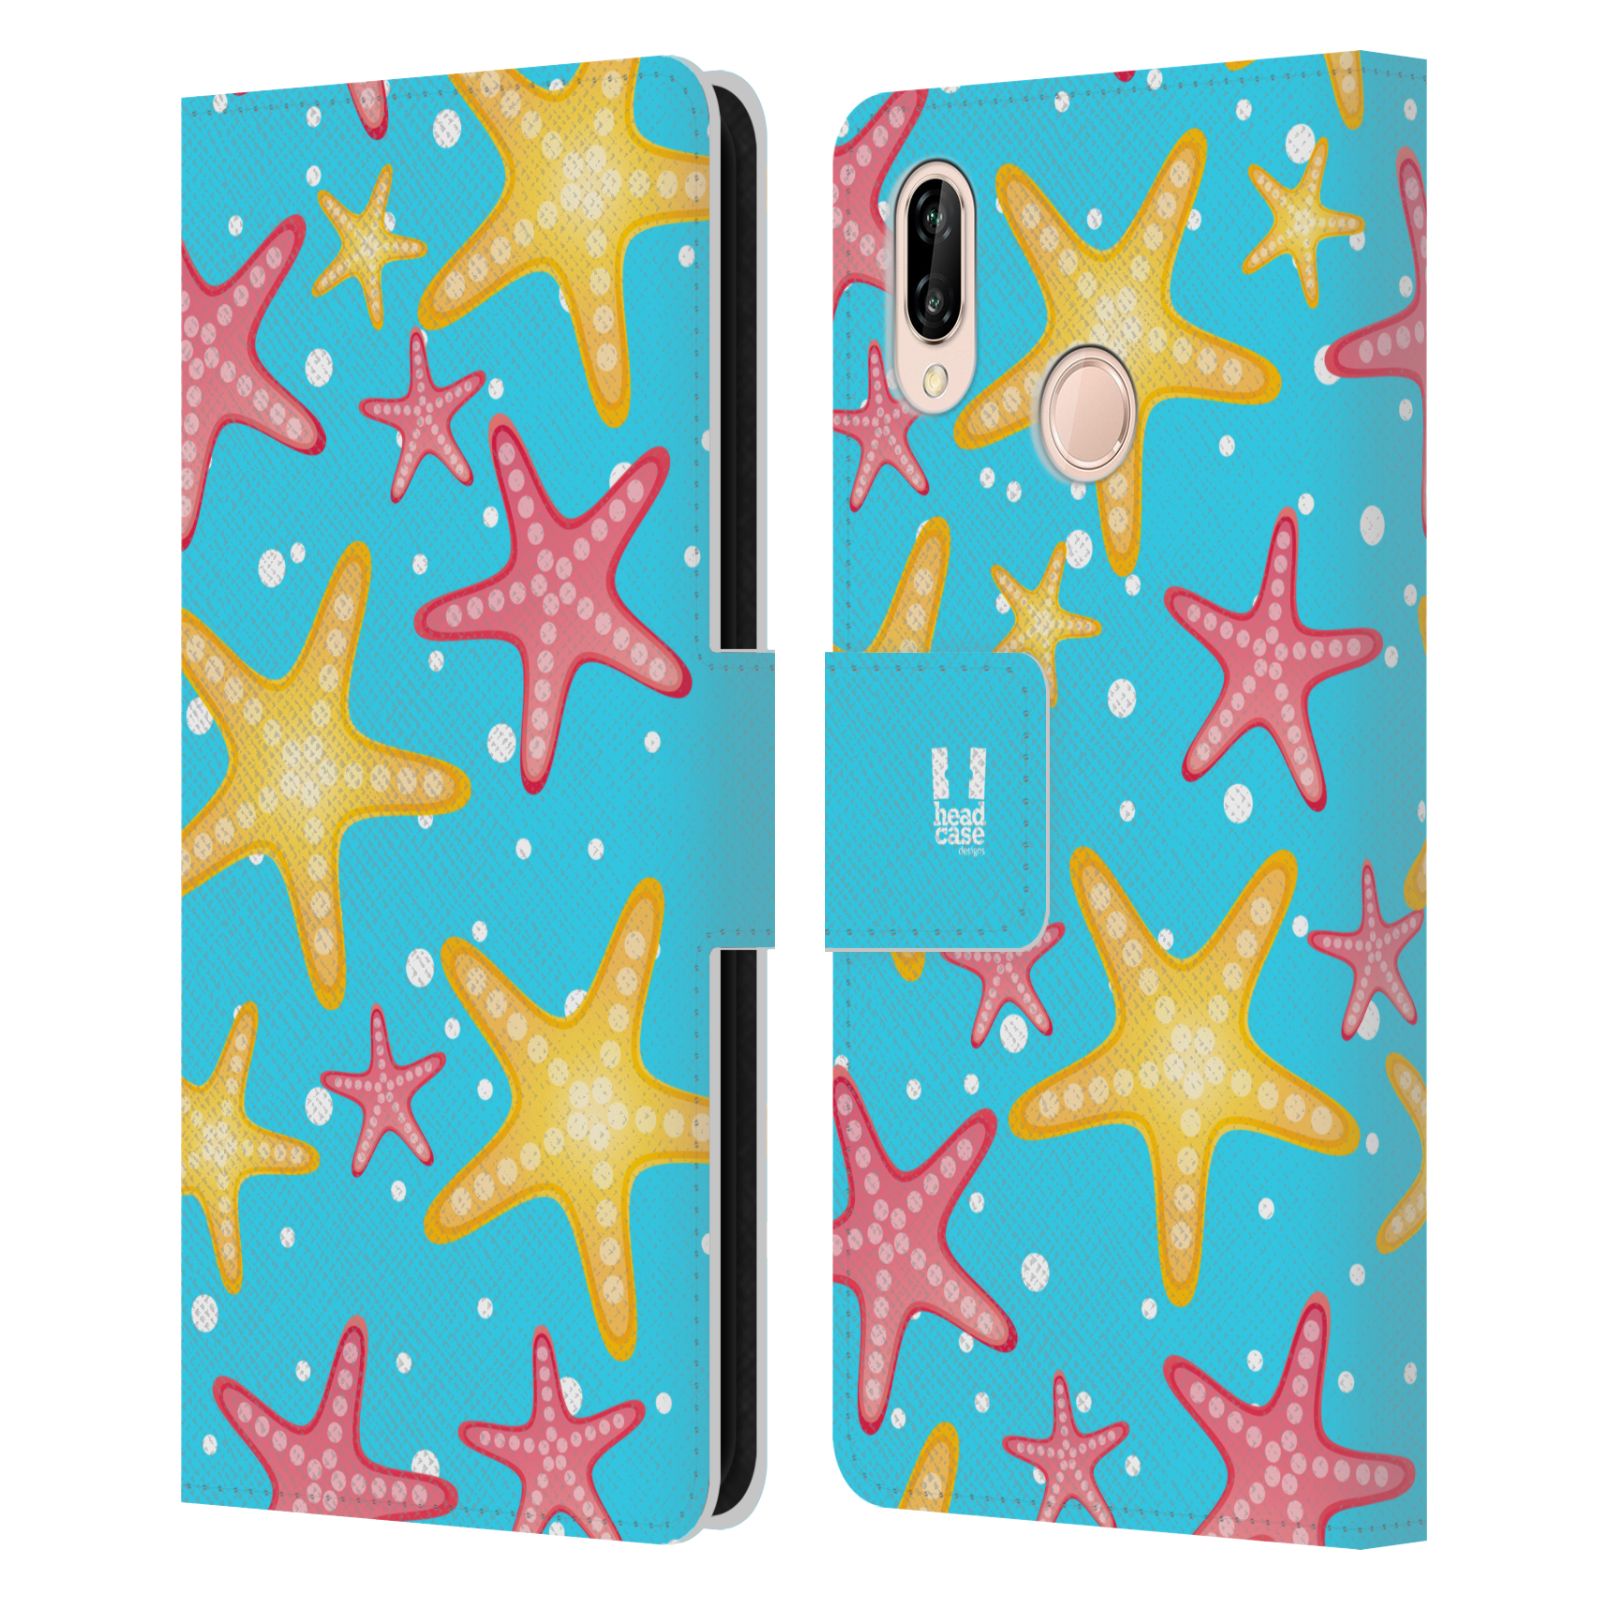 Pouzdro pro mobil Huawei P20 LITE - Mořský vzor - barevné hvězdy